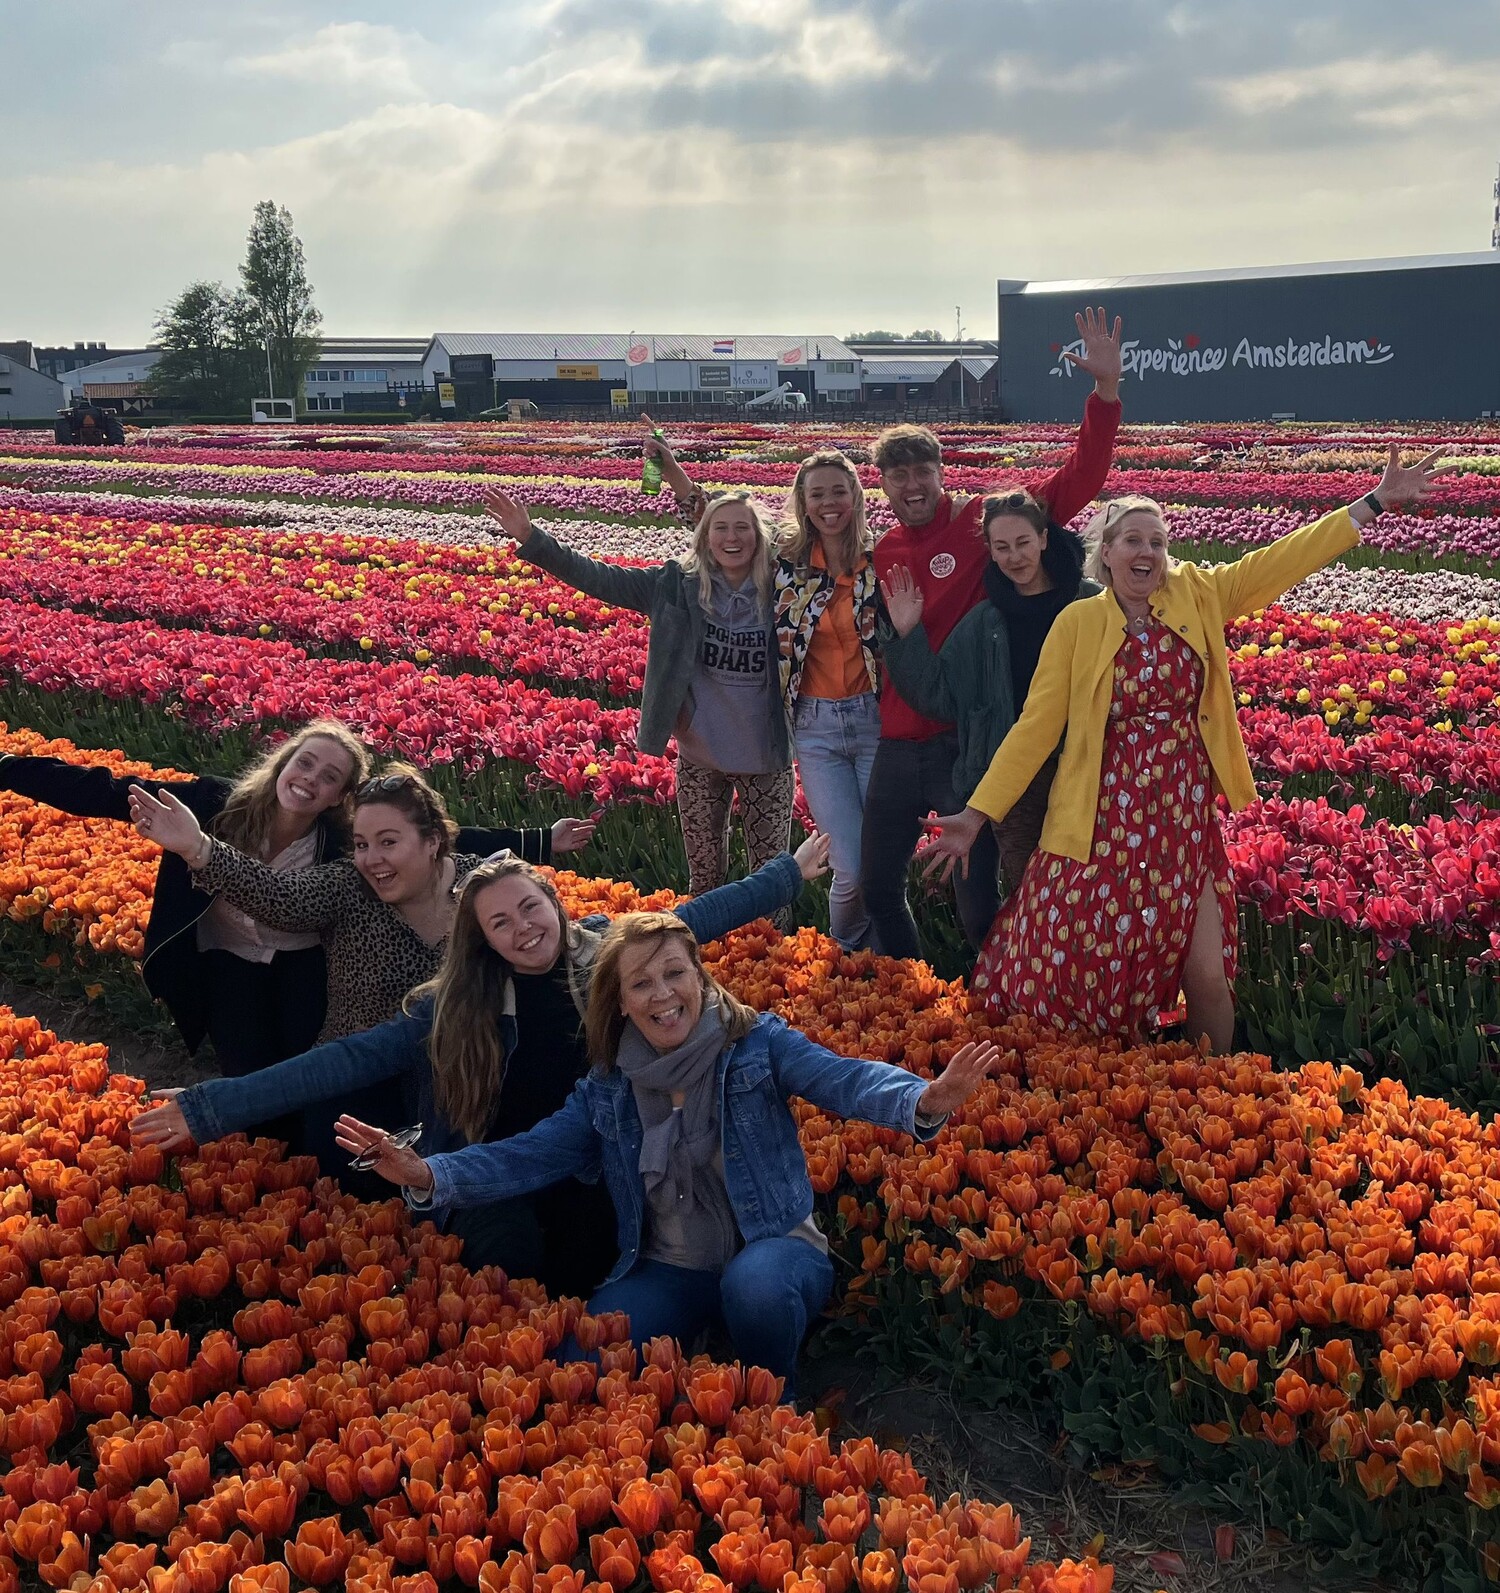 Vrouwen tussen de tulpen in de tulpenvelden van Amsterdam. Bezoekers genieten van de tulpenervaring. Ontdek must-see plaatsen en culturele evenementen in Nederland.